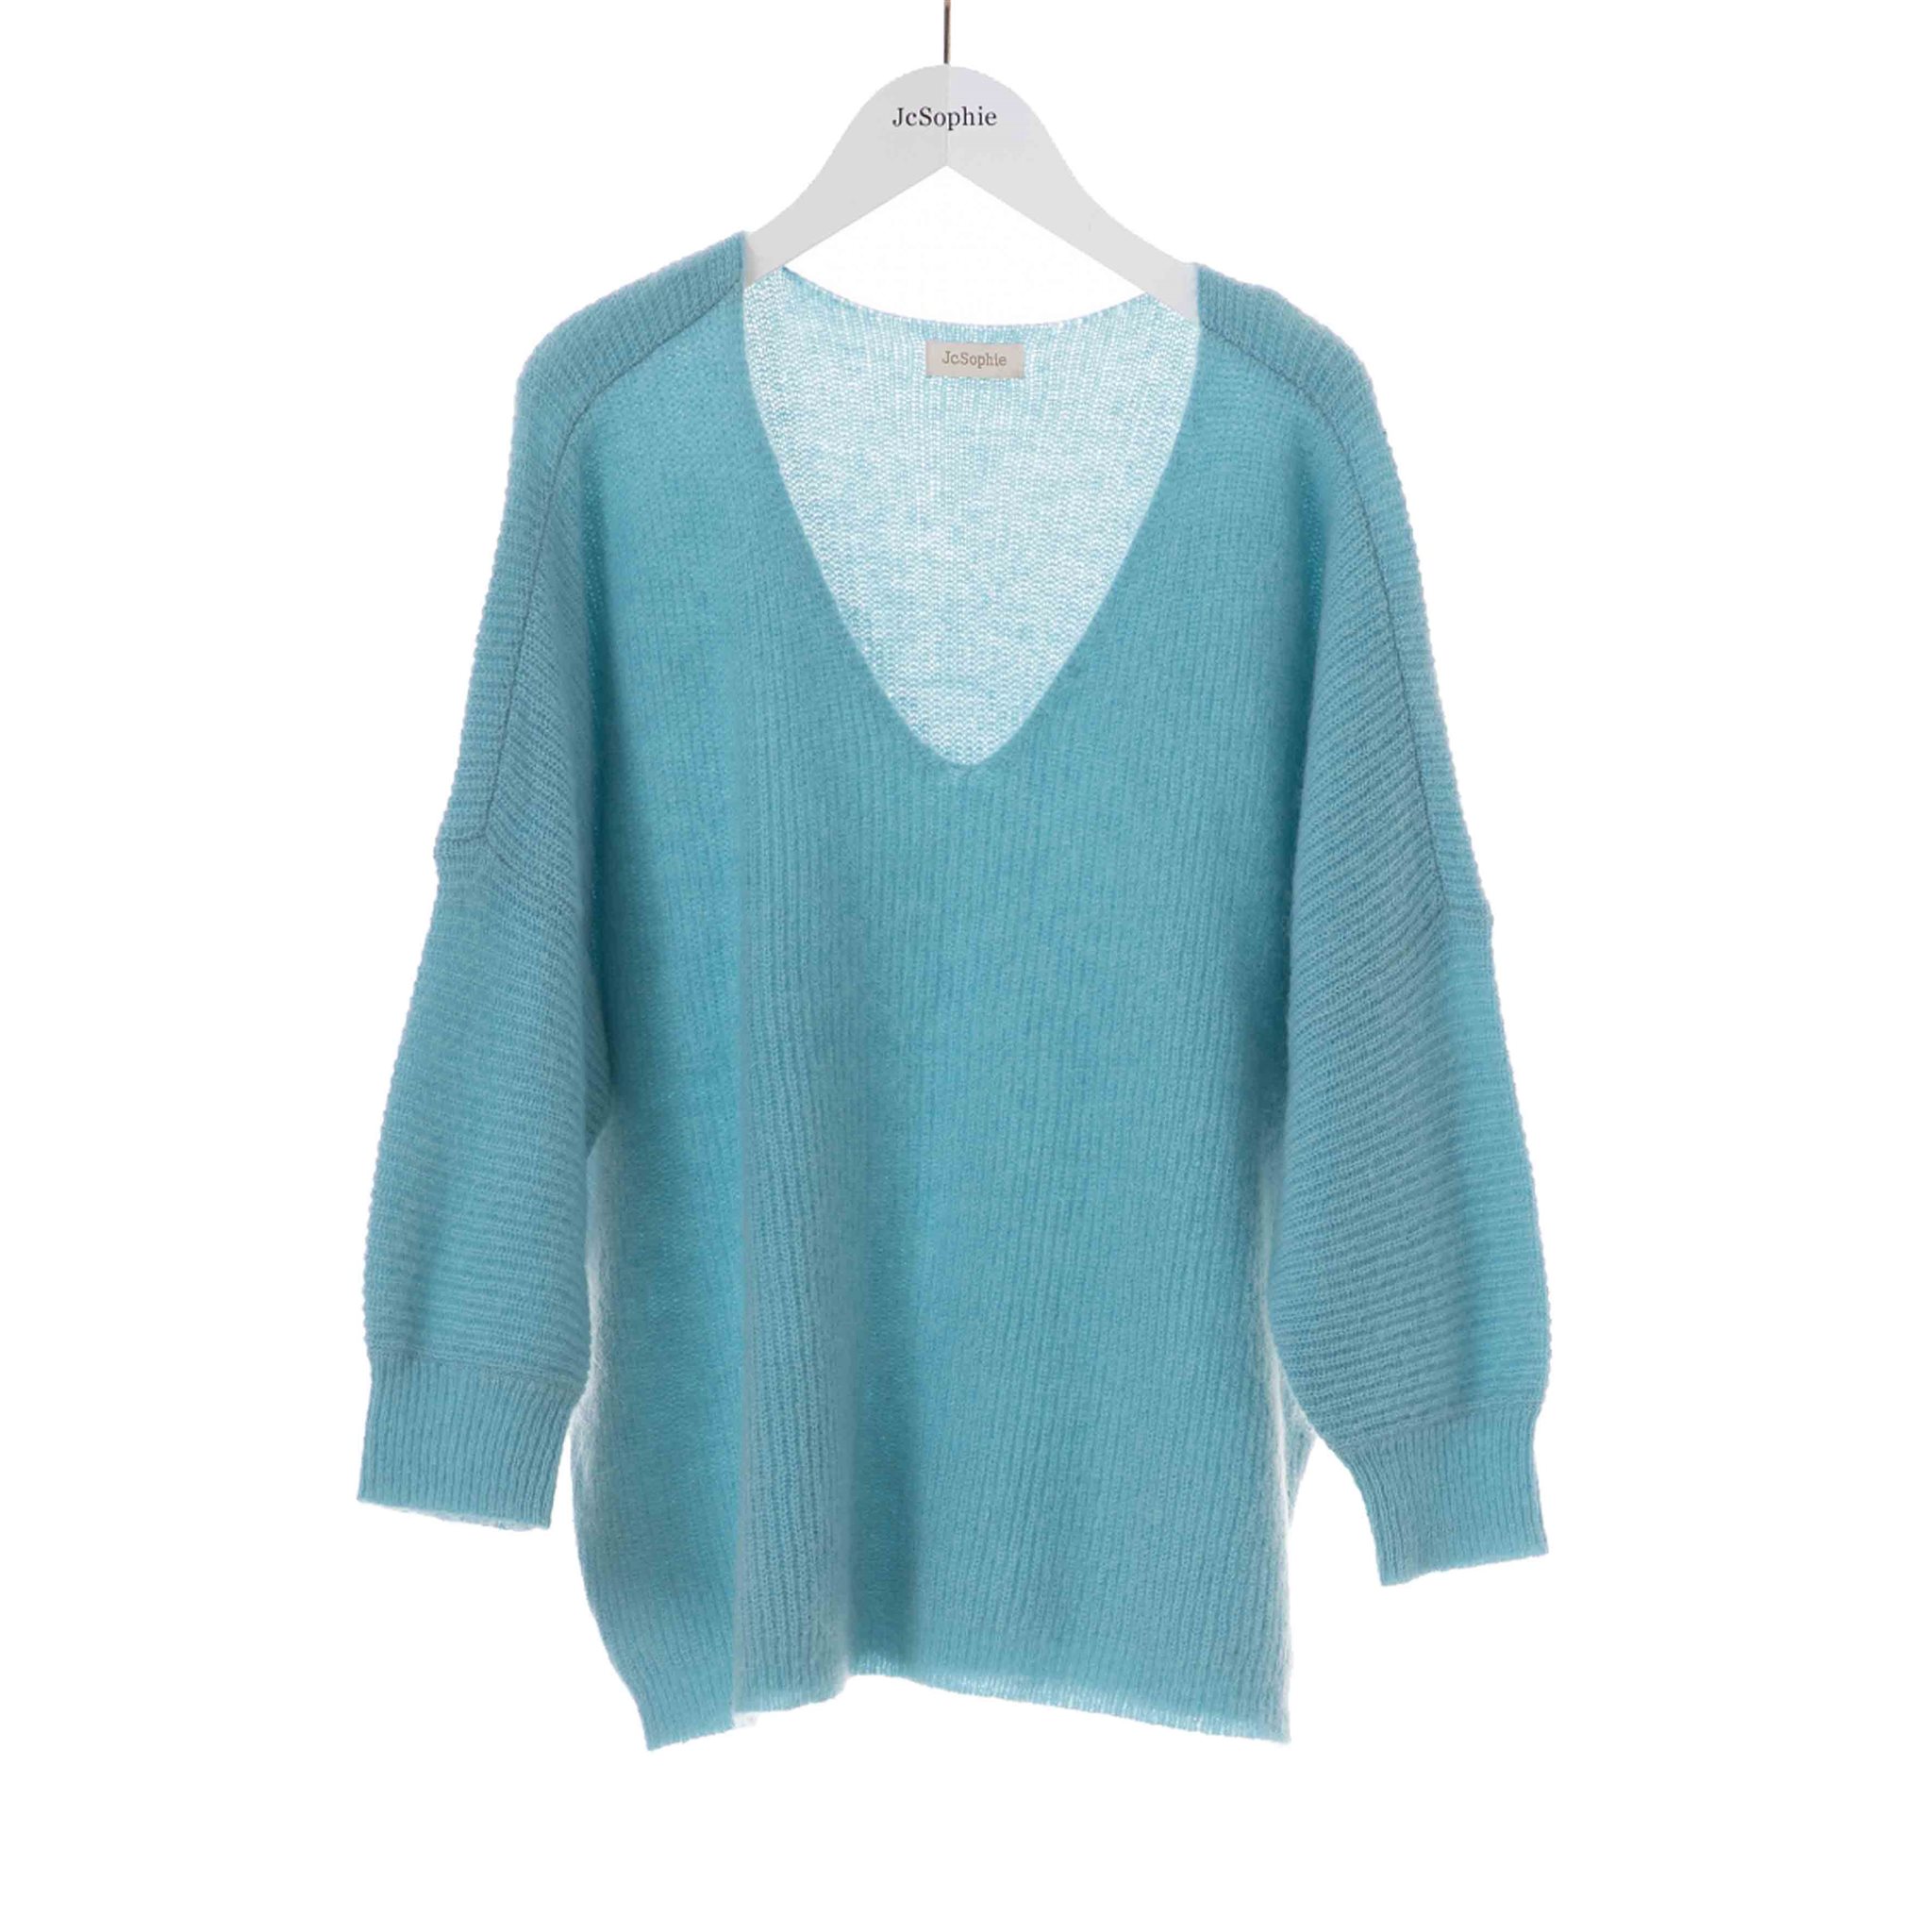 Lunette sweater Jc SOPHIE